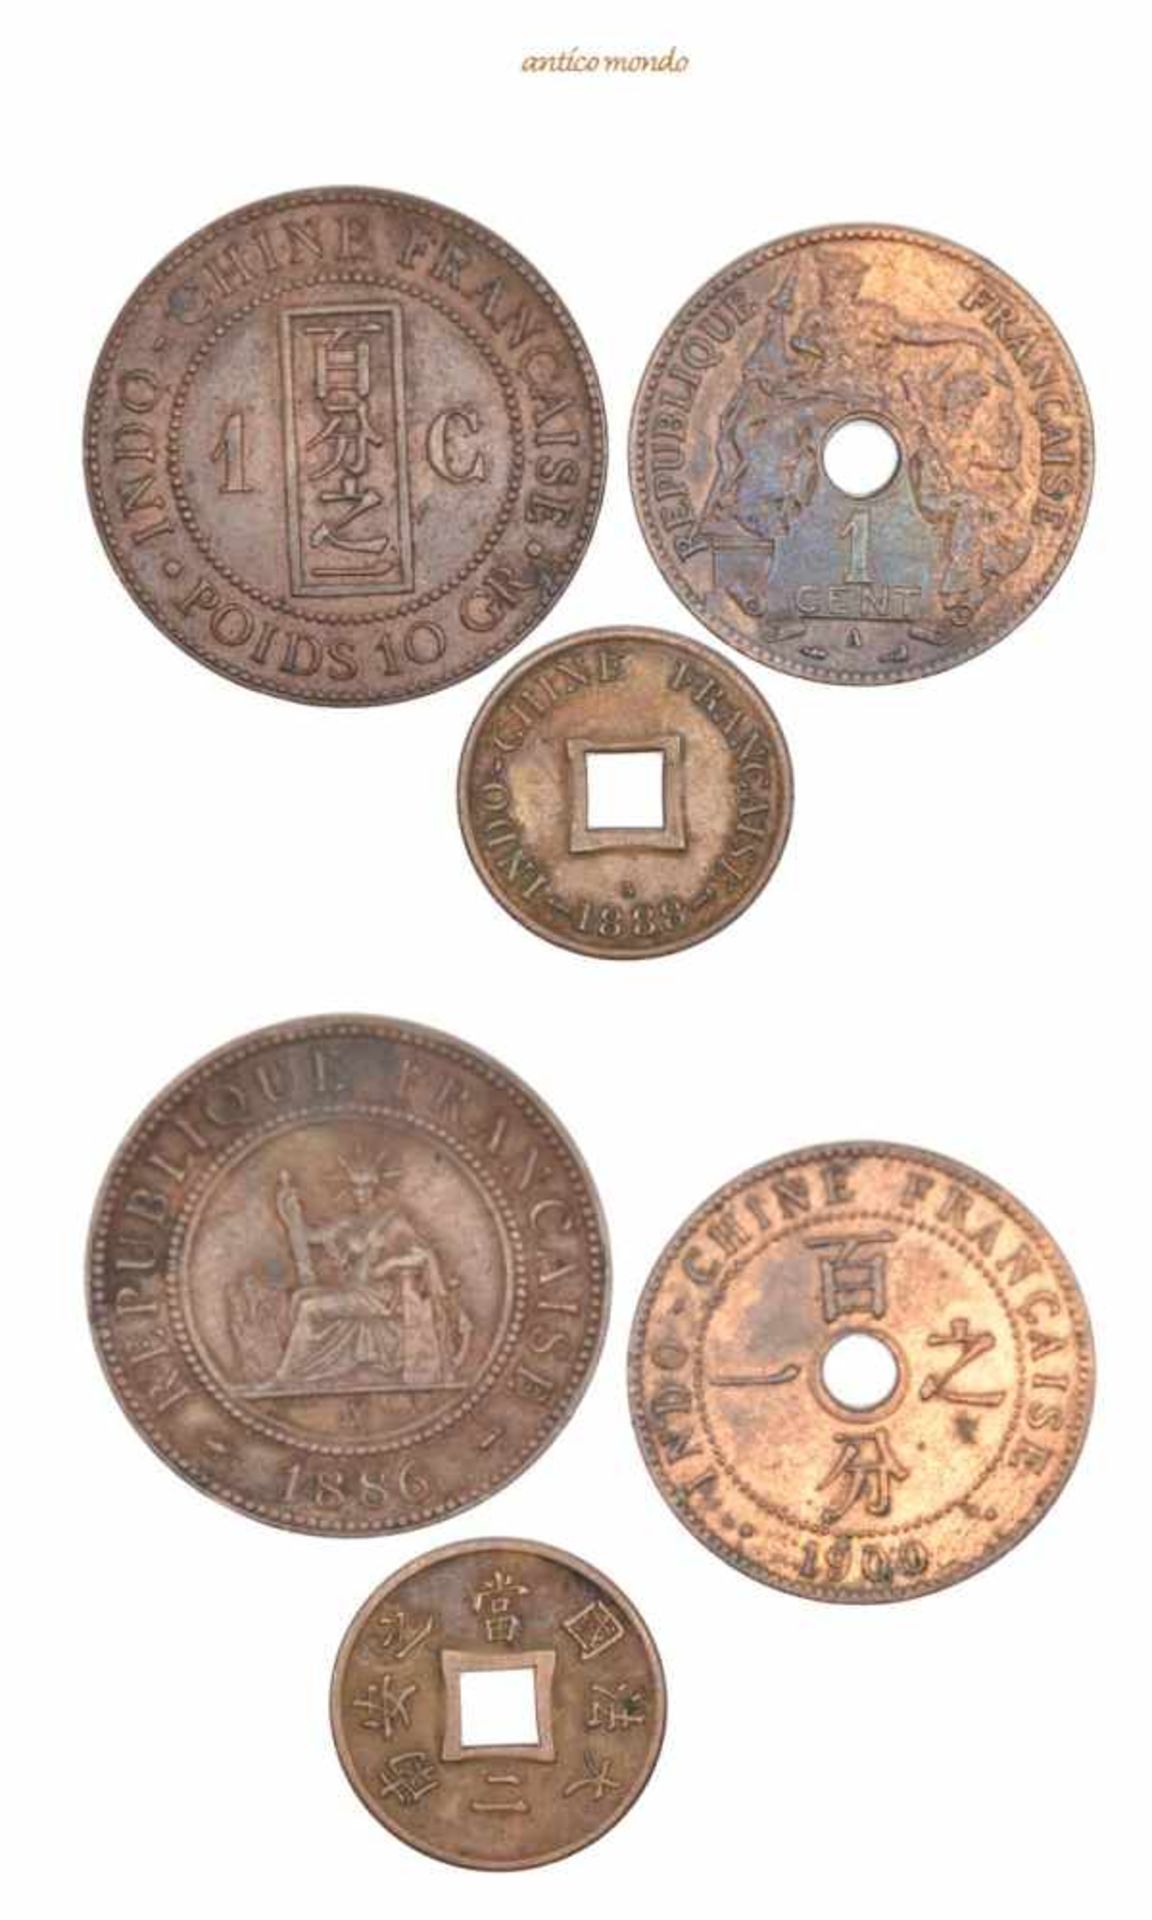 Frankreich Indochina, Cent (2x), 2 Sapeque 1886, 1900, 1888, sehr schön-vorzüglich, 3 Stück- - -21.